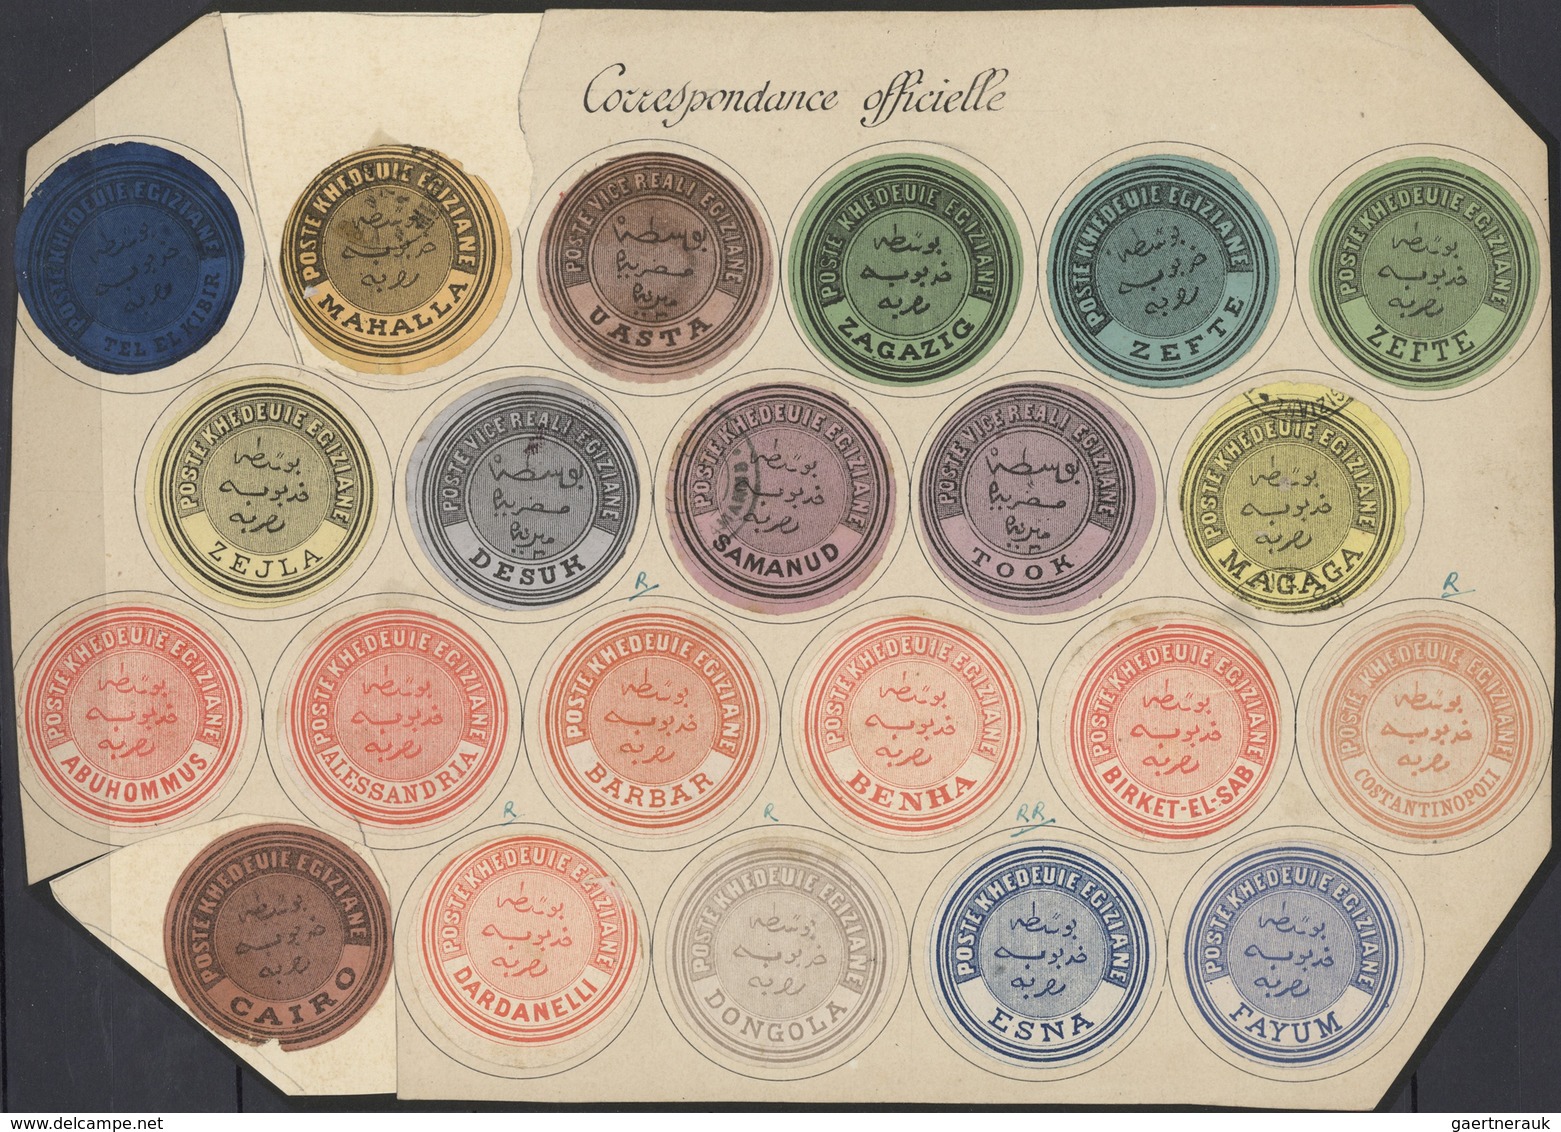 Ägypten - Dienstmarken: 1864/1892 (ca.), INTERPOSTALS, collection of apprx. 148 interpostal seals in